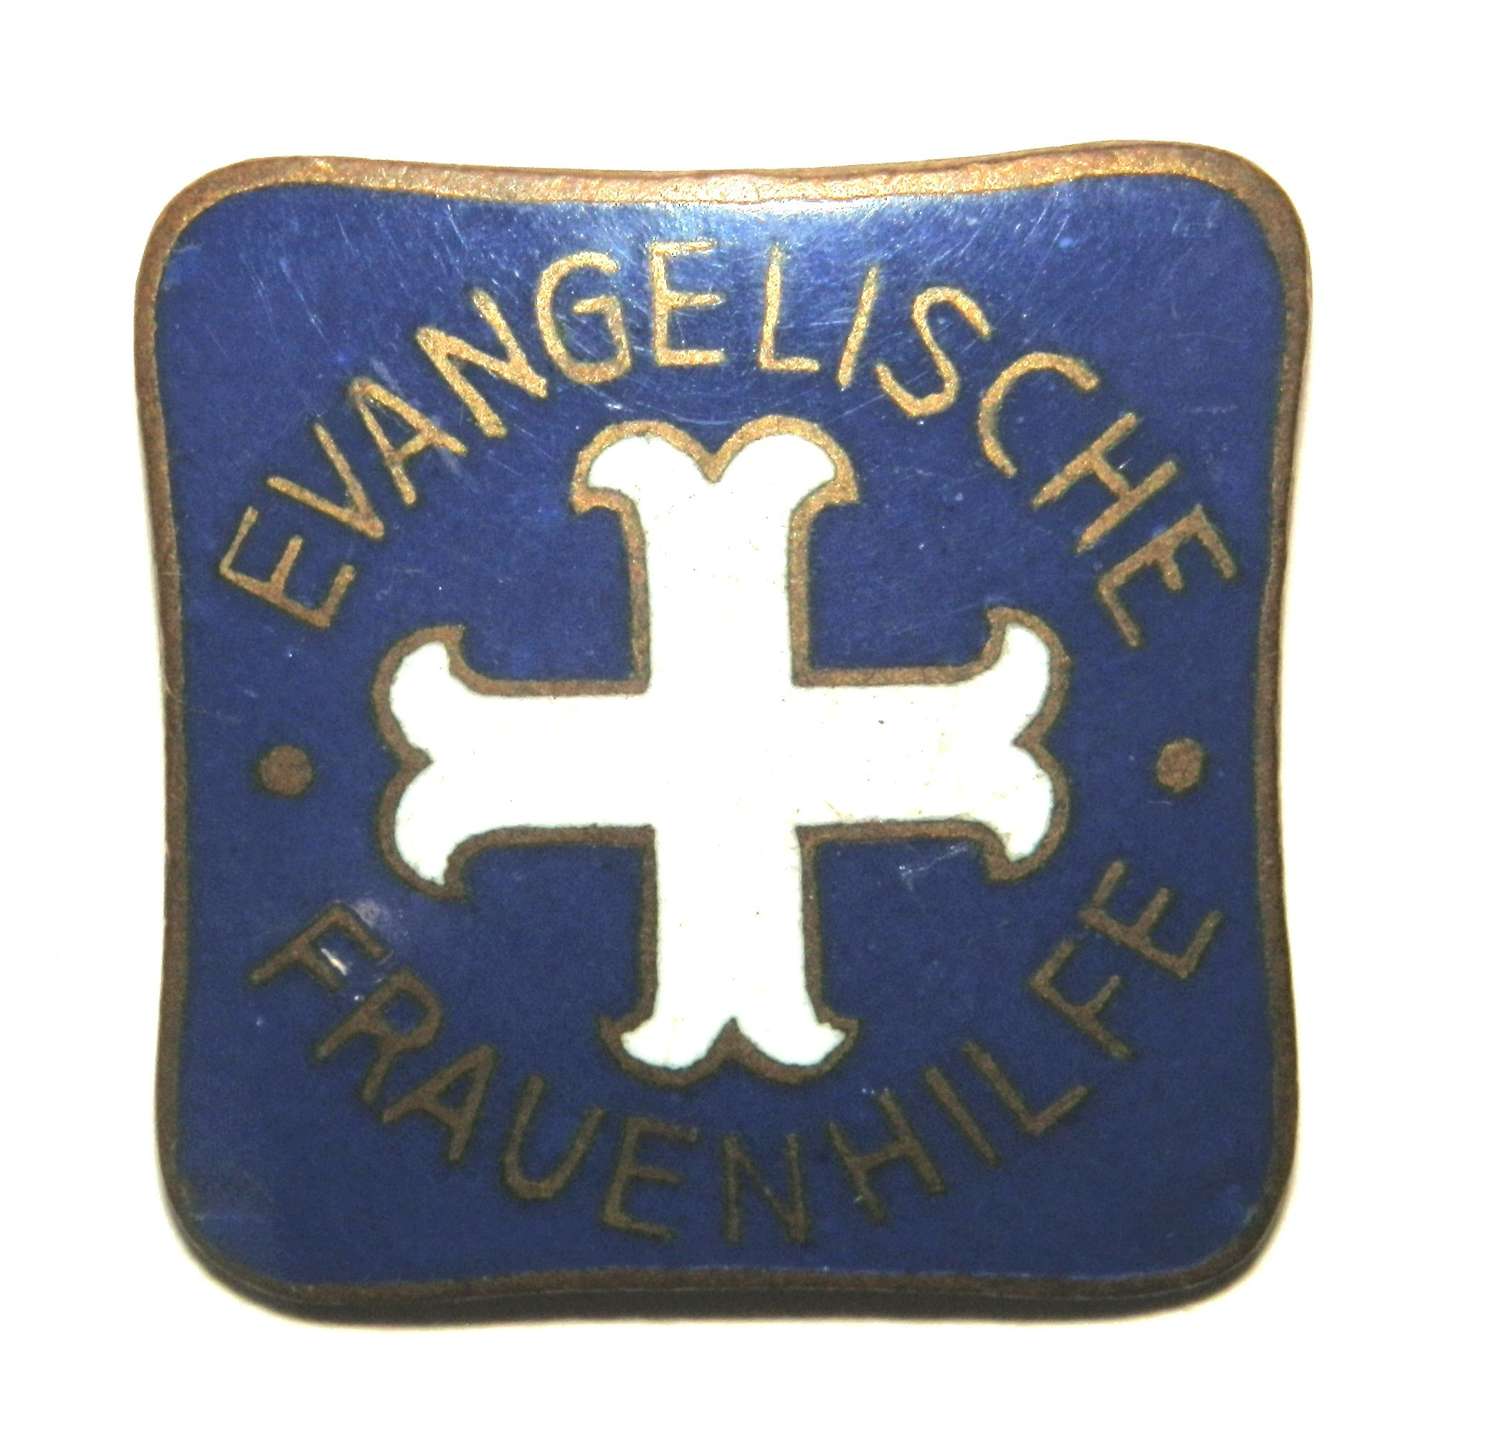 Evangelische Frauenhilfe Badge.